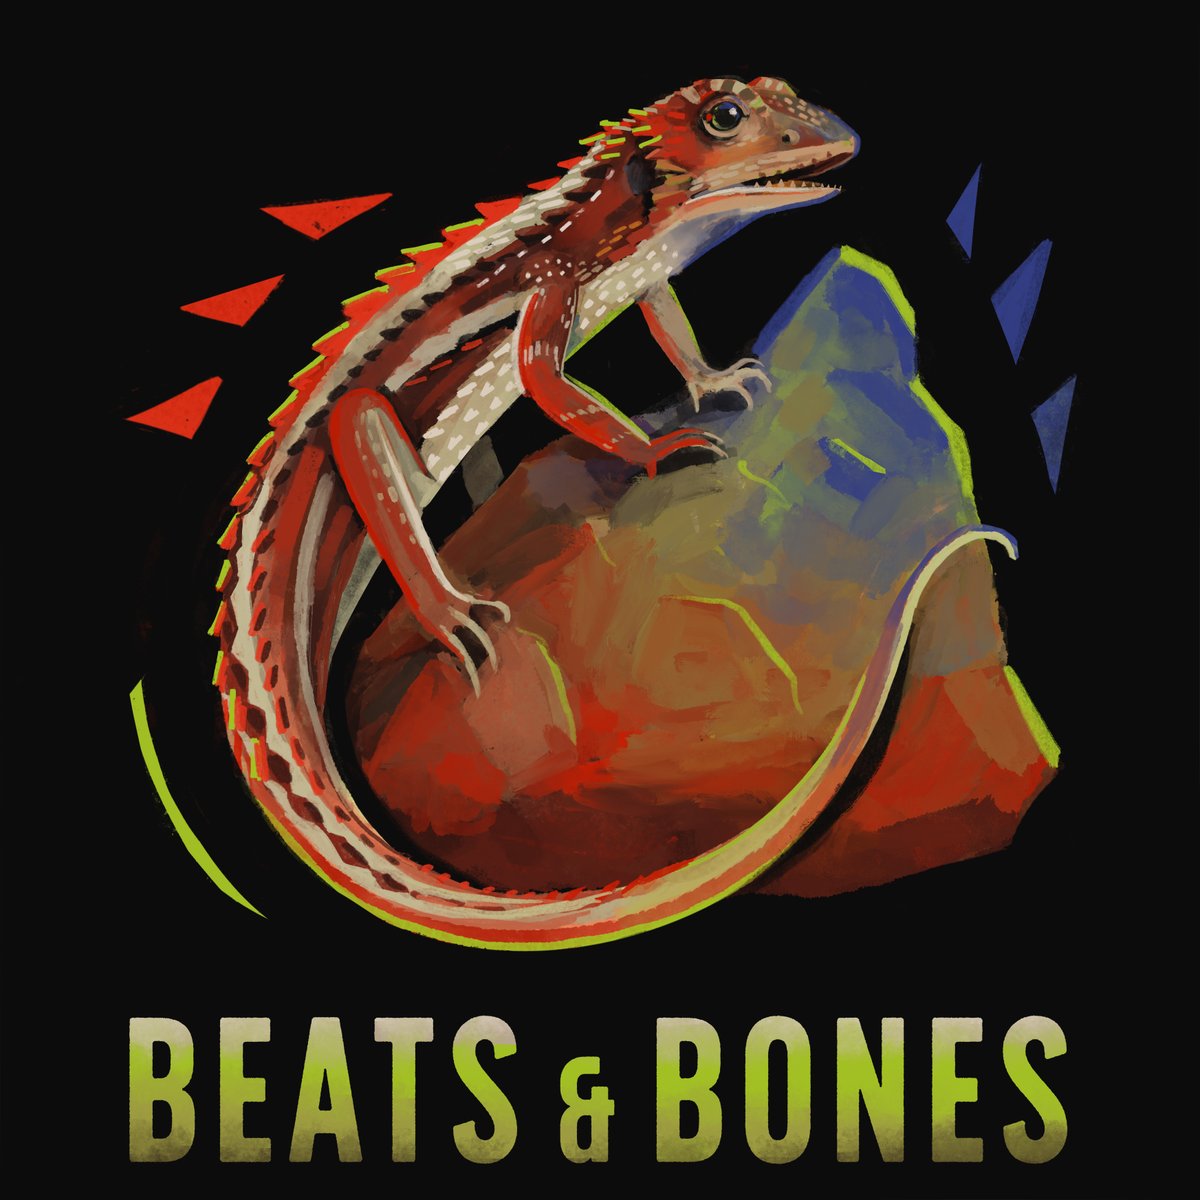 Wie reagieren #Reptilien auf den #Klimawandel? In Beats & Bones besprechen wir, wie sie ihre Körpertemperatur der Umgebung anpassen. Was passiert, wenn sie zu extrem wird? linktr.ee/mfnberlin 🐊 In Kooperation mit unserem Hauptsponsor @BerlinerSpk. 💡 #WissenSchafftDurchblick